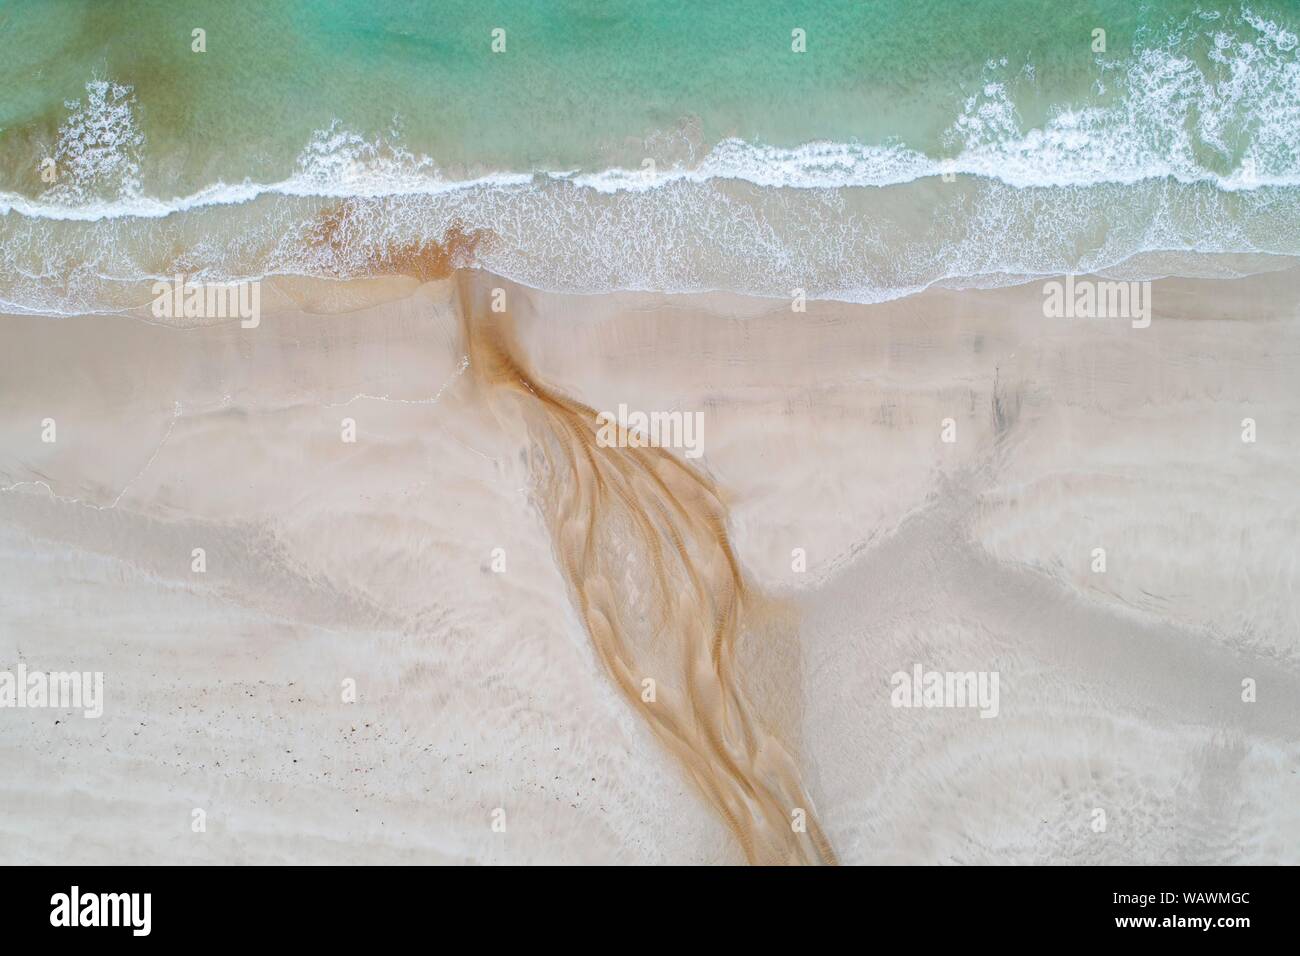 Arroyo con agua ferruginosa rojiza fluye a lo largo de una playa de arena en el mar, cerca de Stornoway, la isla de Lewis y Harris, Escocia, Gran Bretaña, Gran Foto de stock